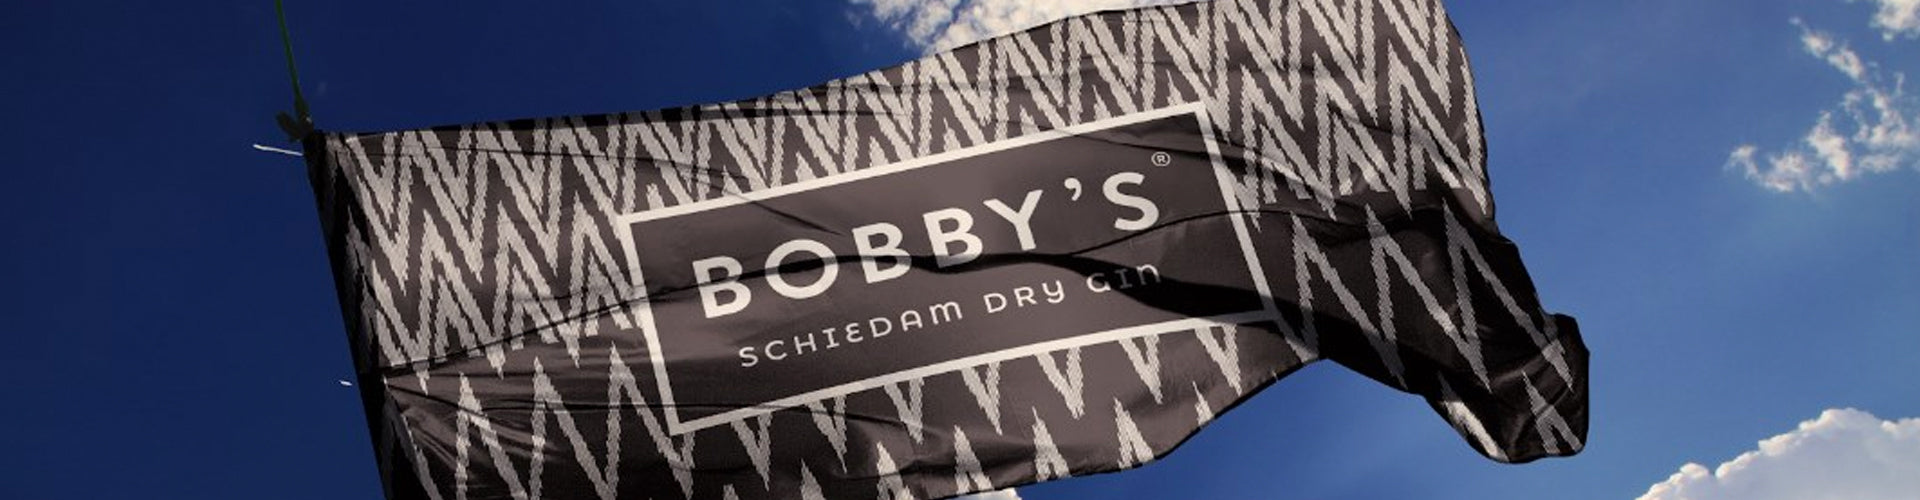 Bobby's Schiedam Gin Flag fluttering in sky